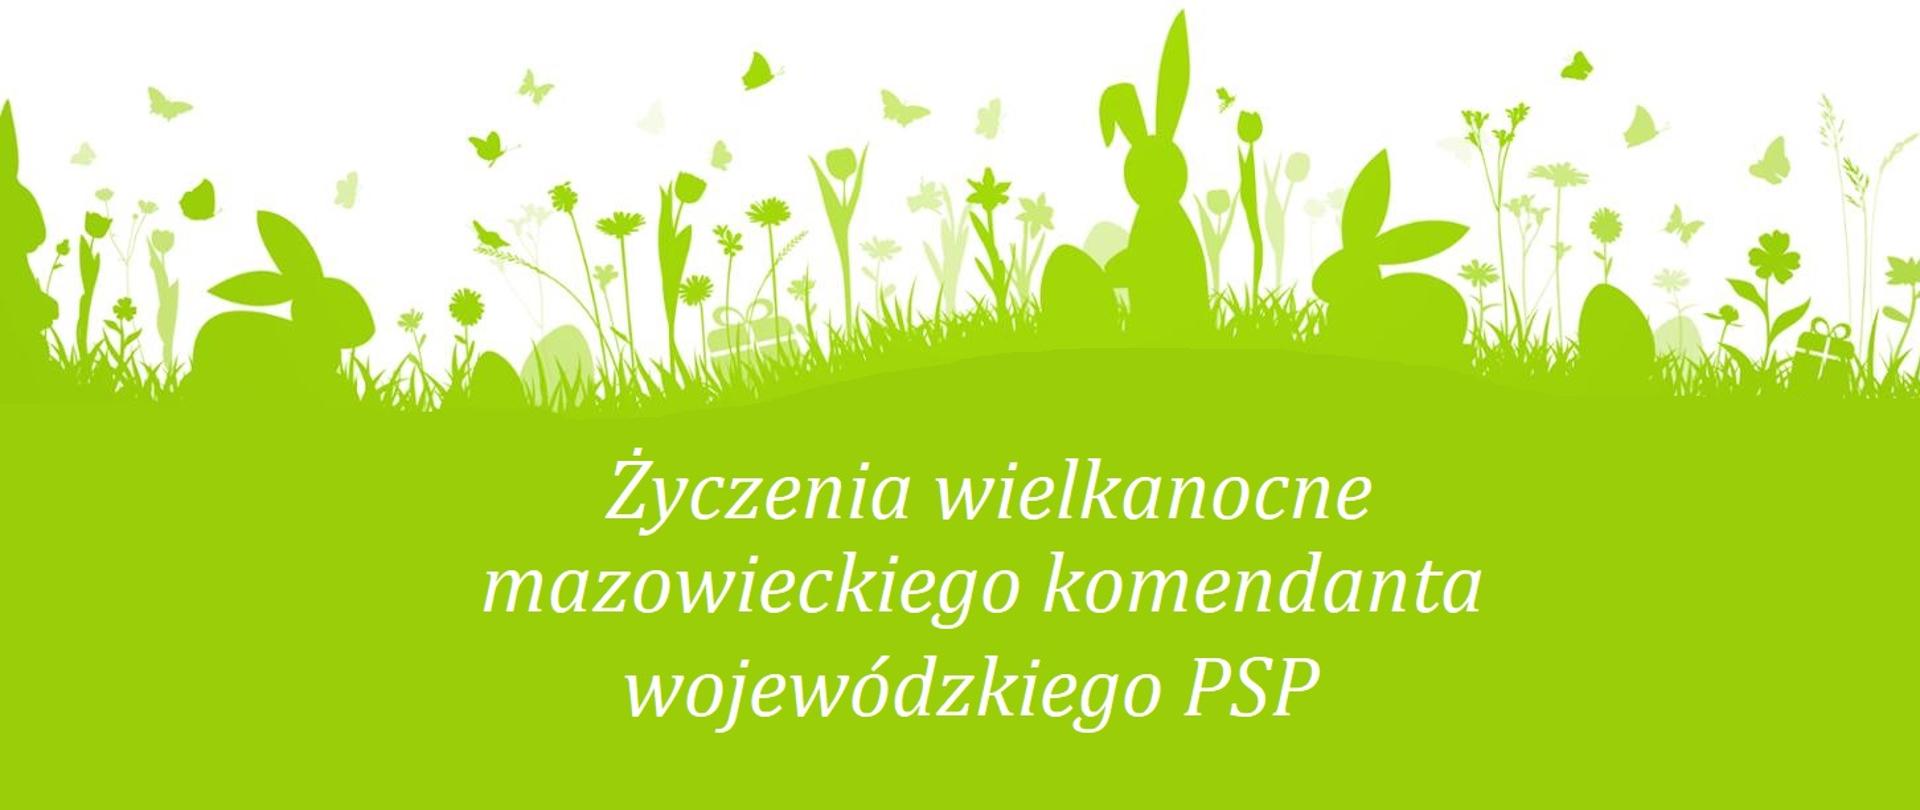 Życzenia wielkanocne mazowieckiego komendanta wojewódzkiego PSP napisane białym drukiem na zielonym tle w kształcie trawy.